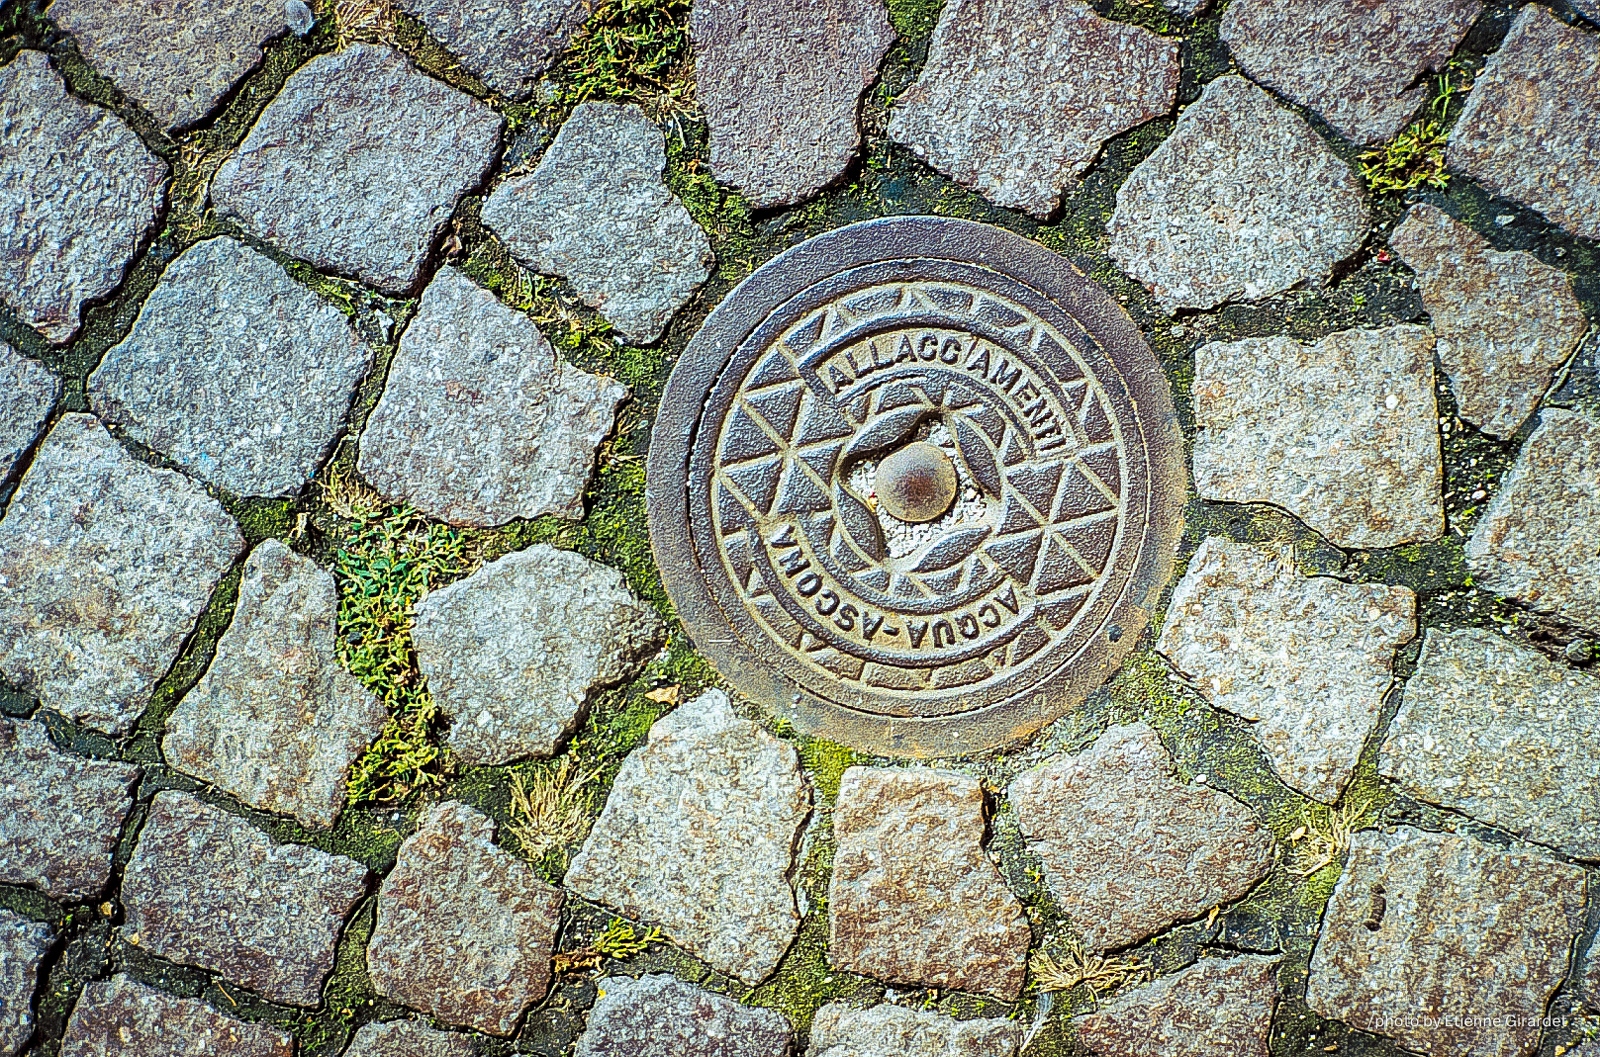 200110a_allago-amenti_GMH-manhole-cover-acqua-ascona-by-E-Girardet.jpg